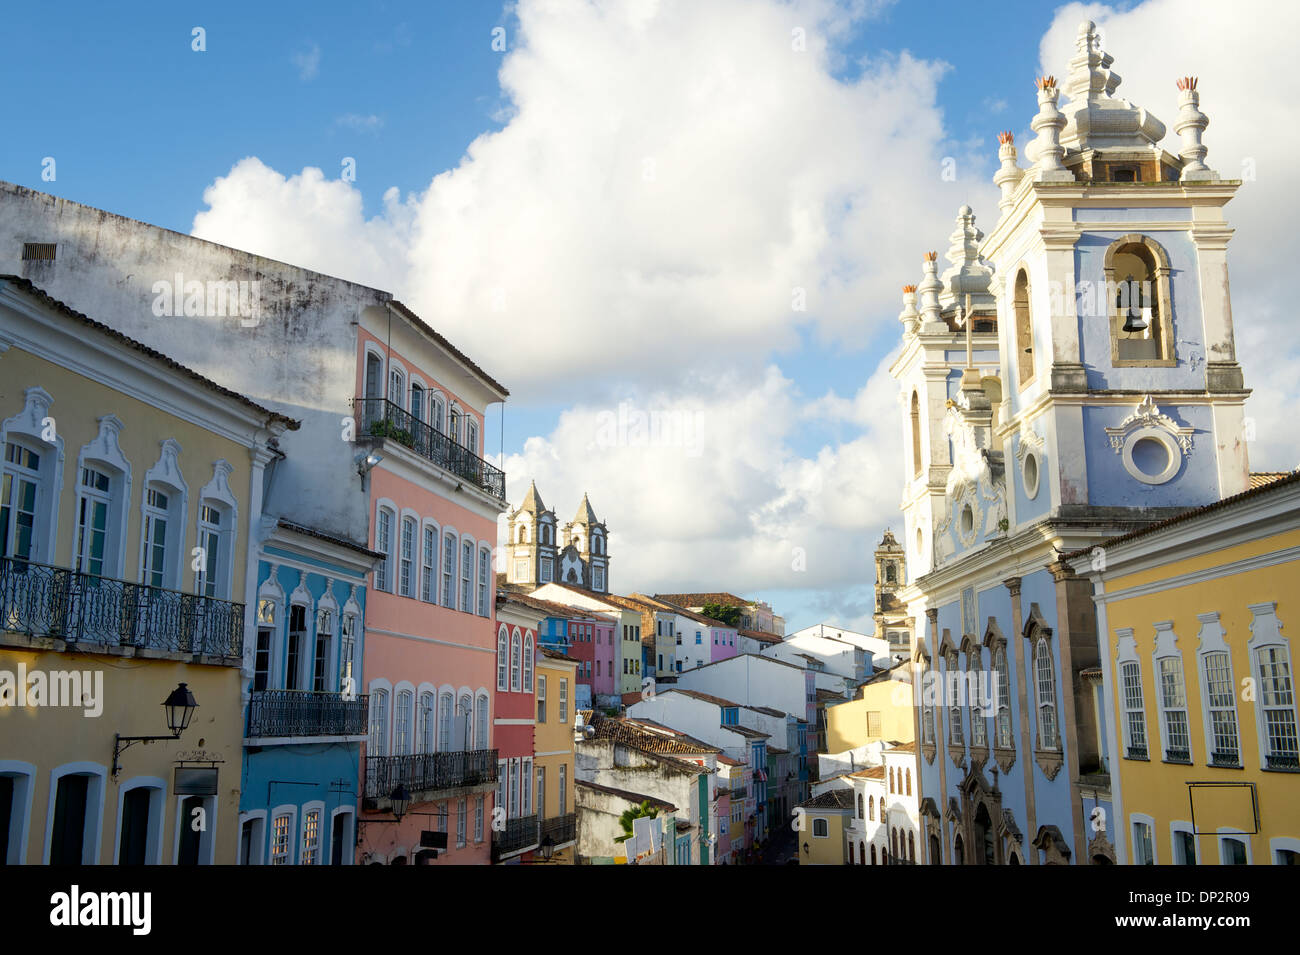 Historic city center of Pelourinho Salvador da Bahia Brazil features colorful colonial buildings Stock Photo